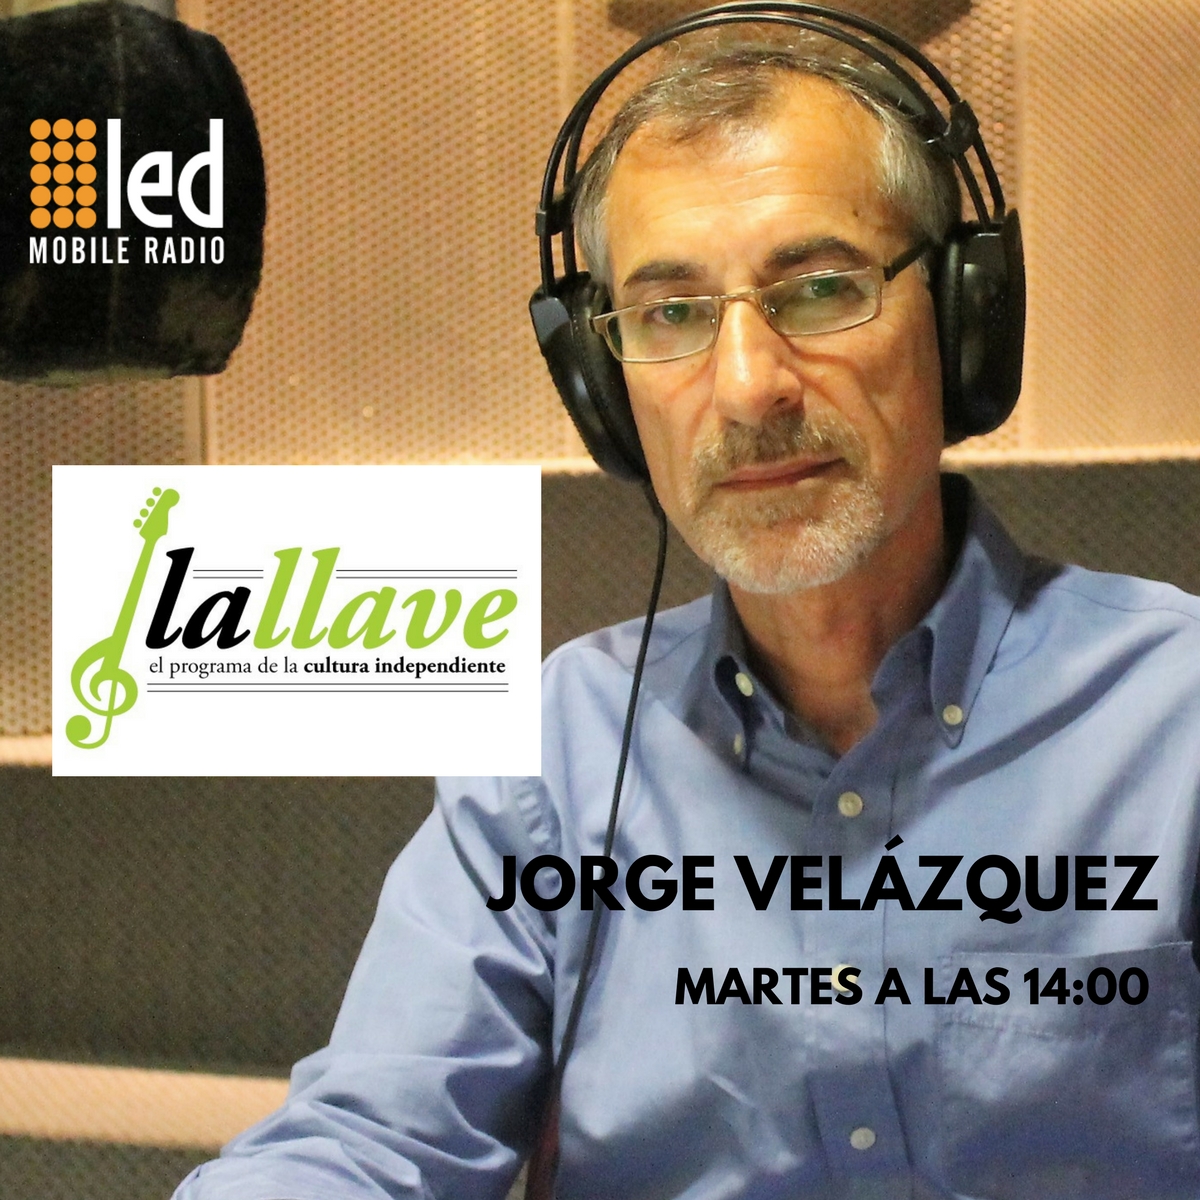 #Podcast La Llave | 17.07: @RodolfoRoballos "Academia Tango Club" y Marco Manduca @Comboelfarolito